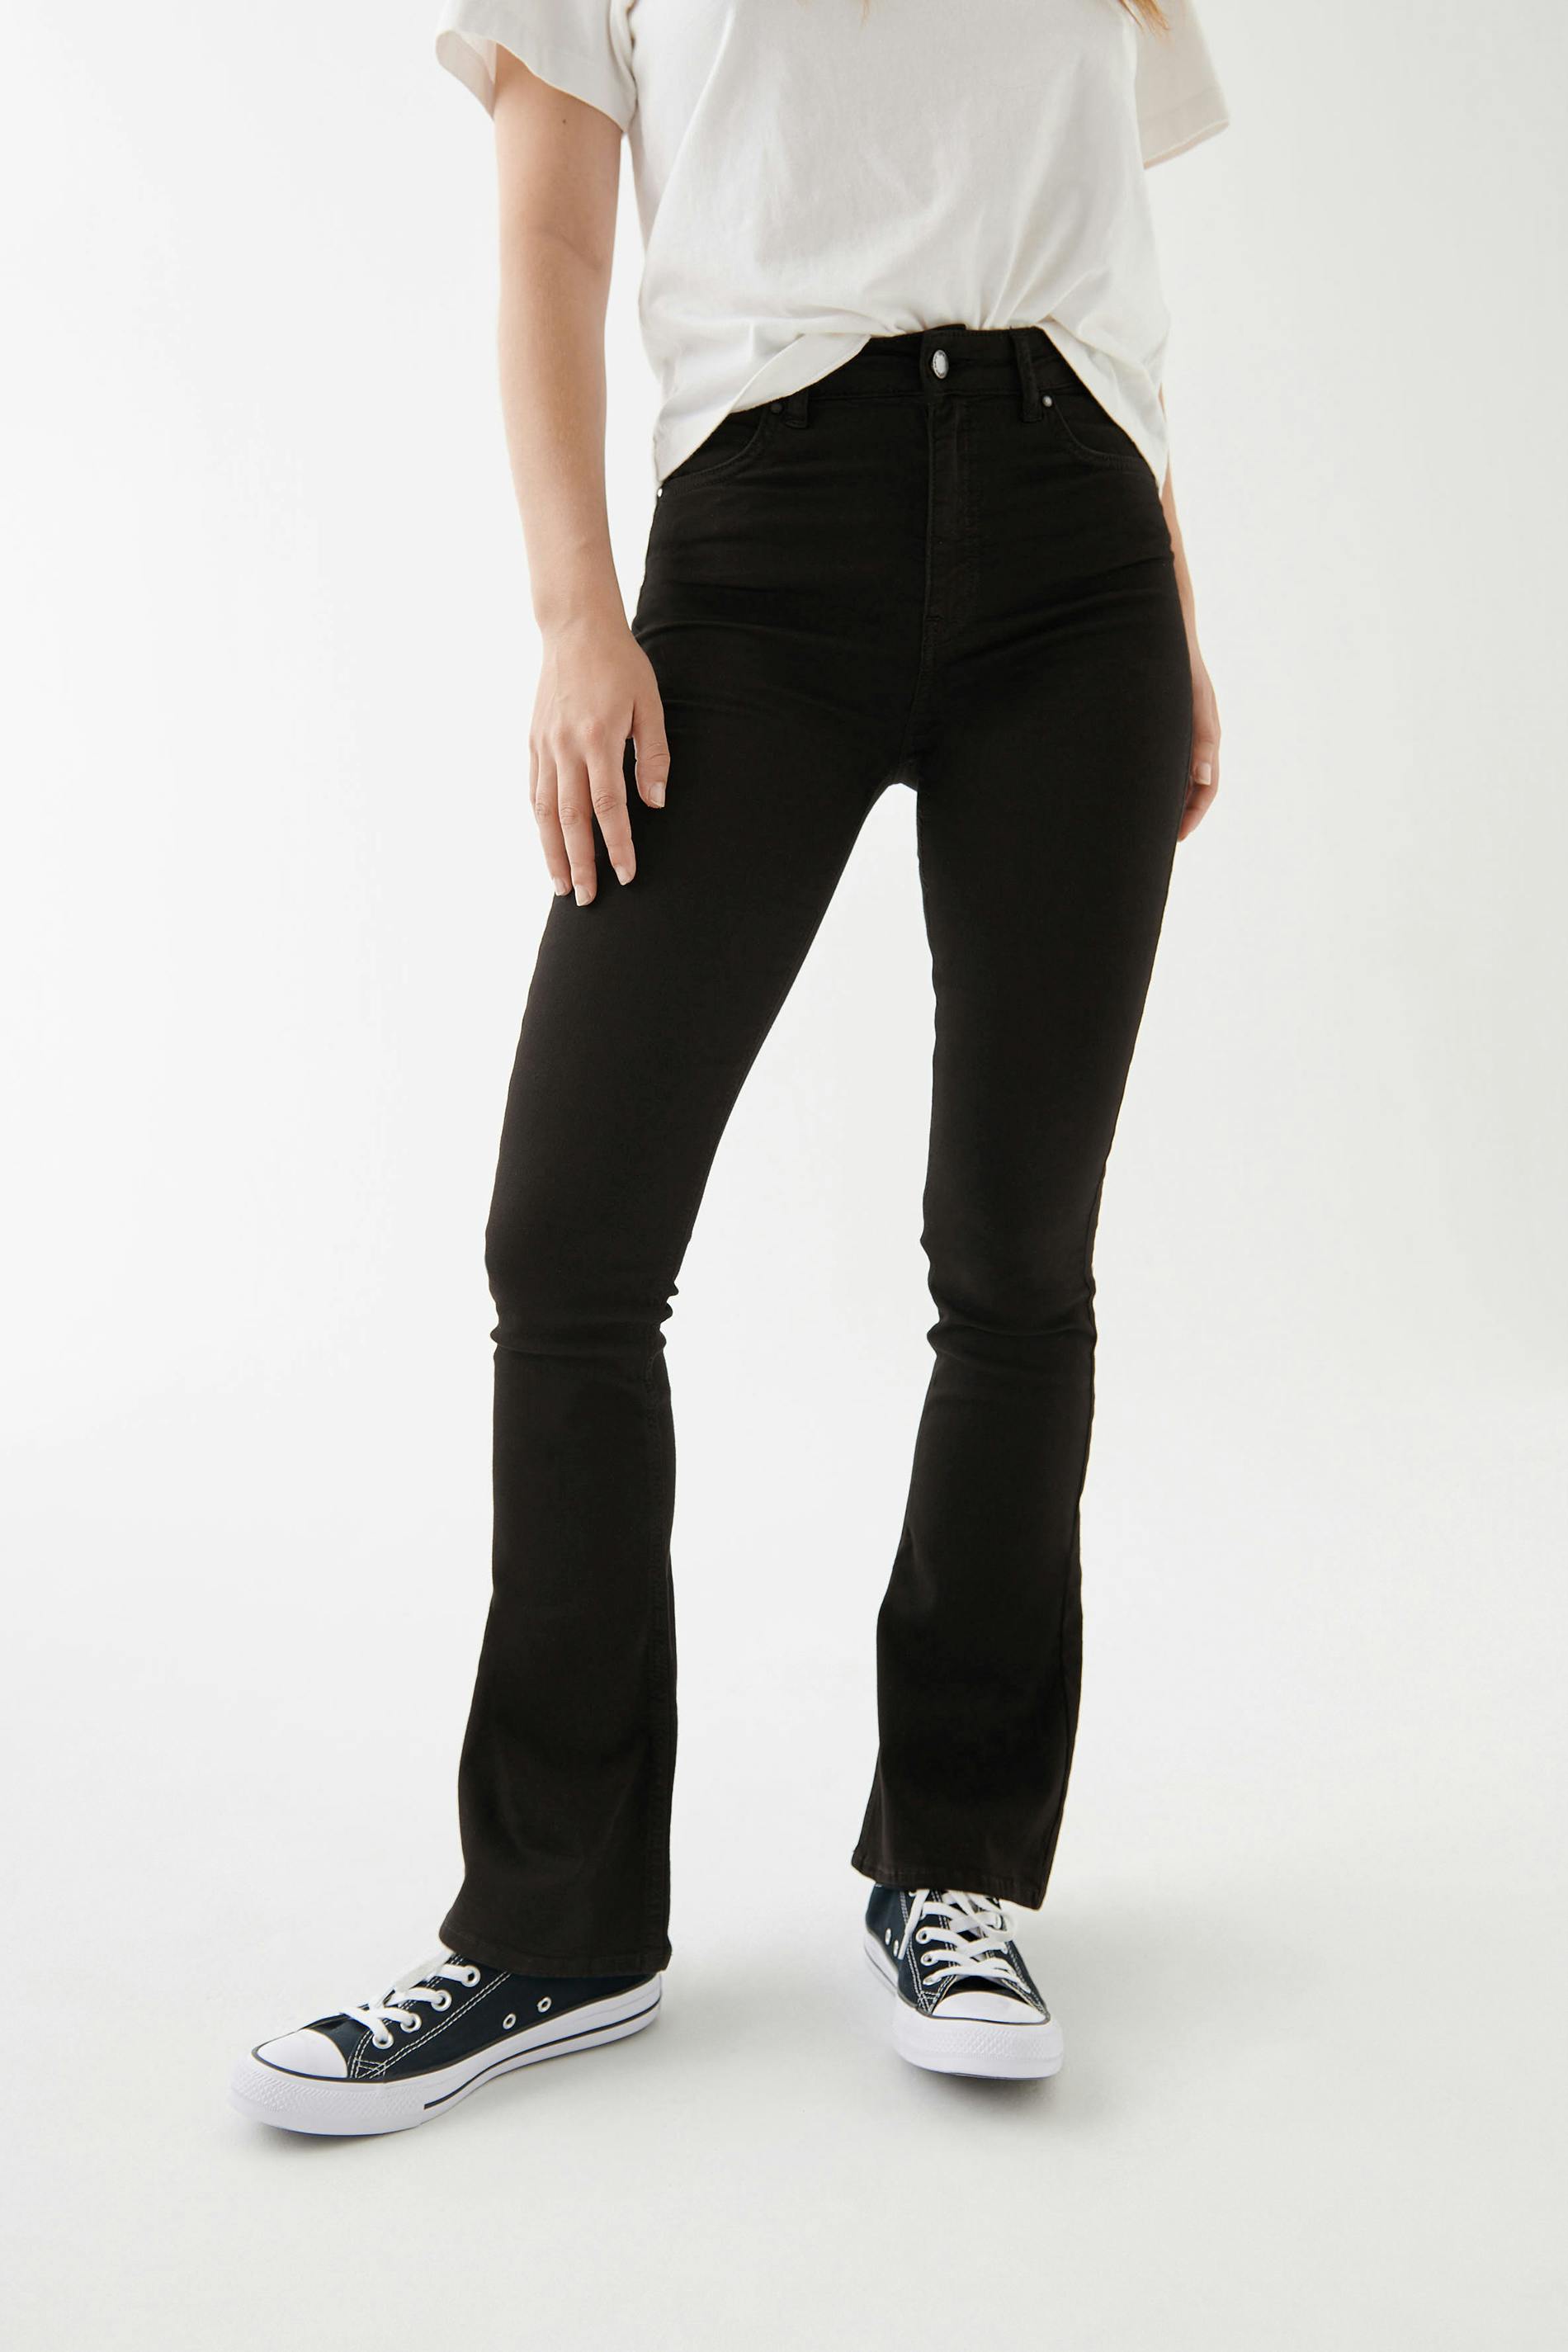 levis jeans size